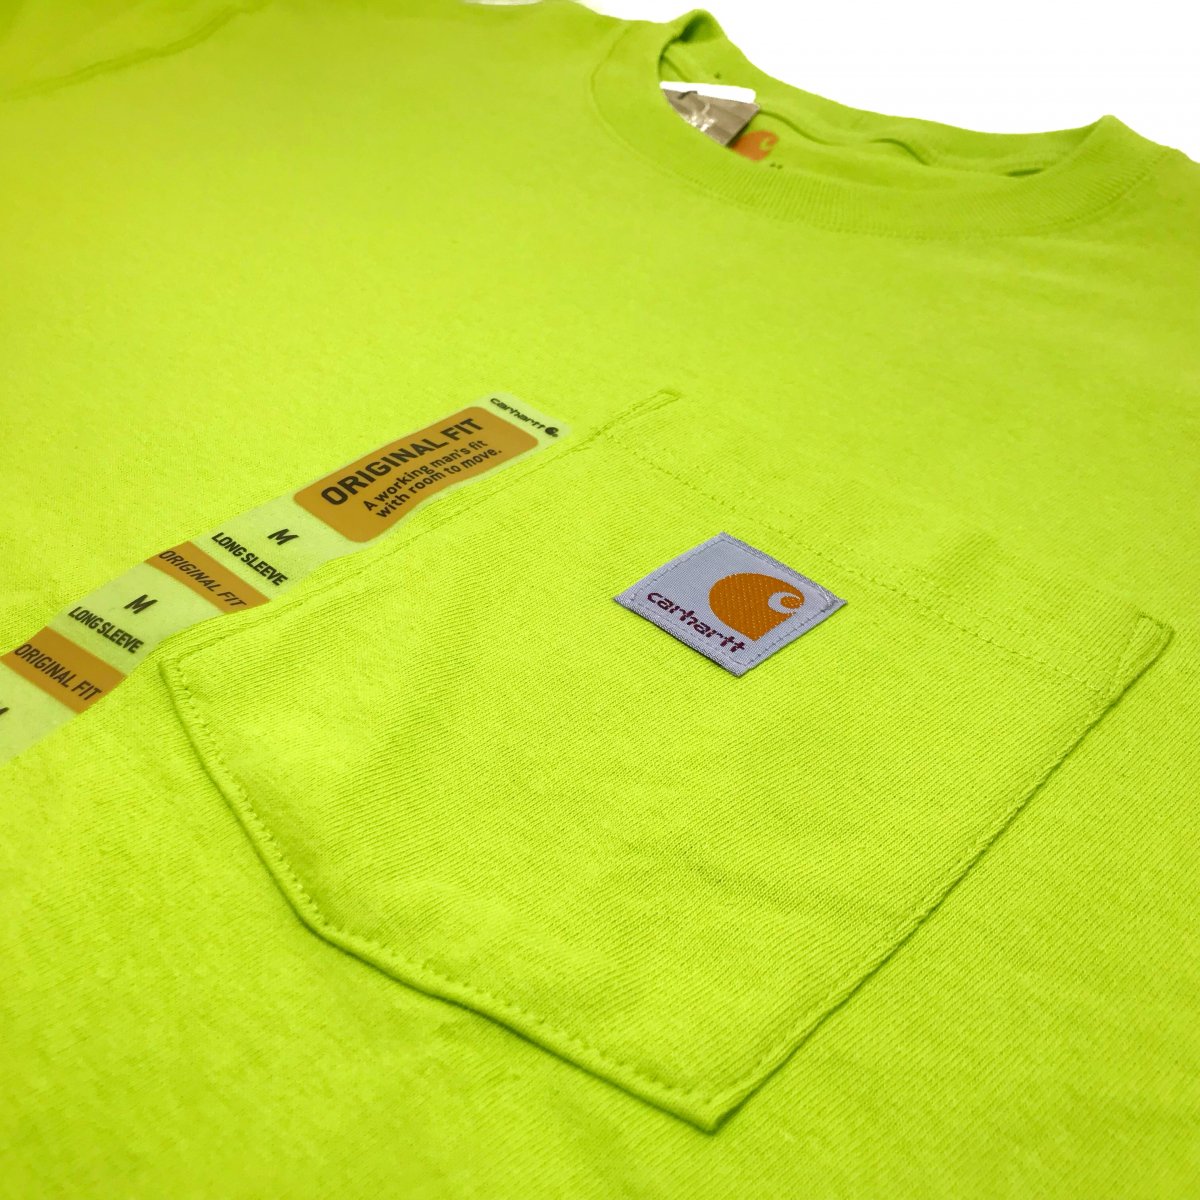 新品 US企画 Carhartt Pocket L/S Tee (SOUR APPLE) カーハート ポケット付 長袖 Tシャツ ロンT ポケT 無地T  黄緑 サワーアップル ライトグリーン - NEWJOKE ONLINE STORE